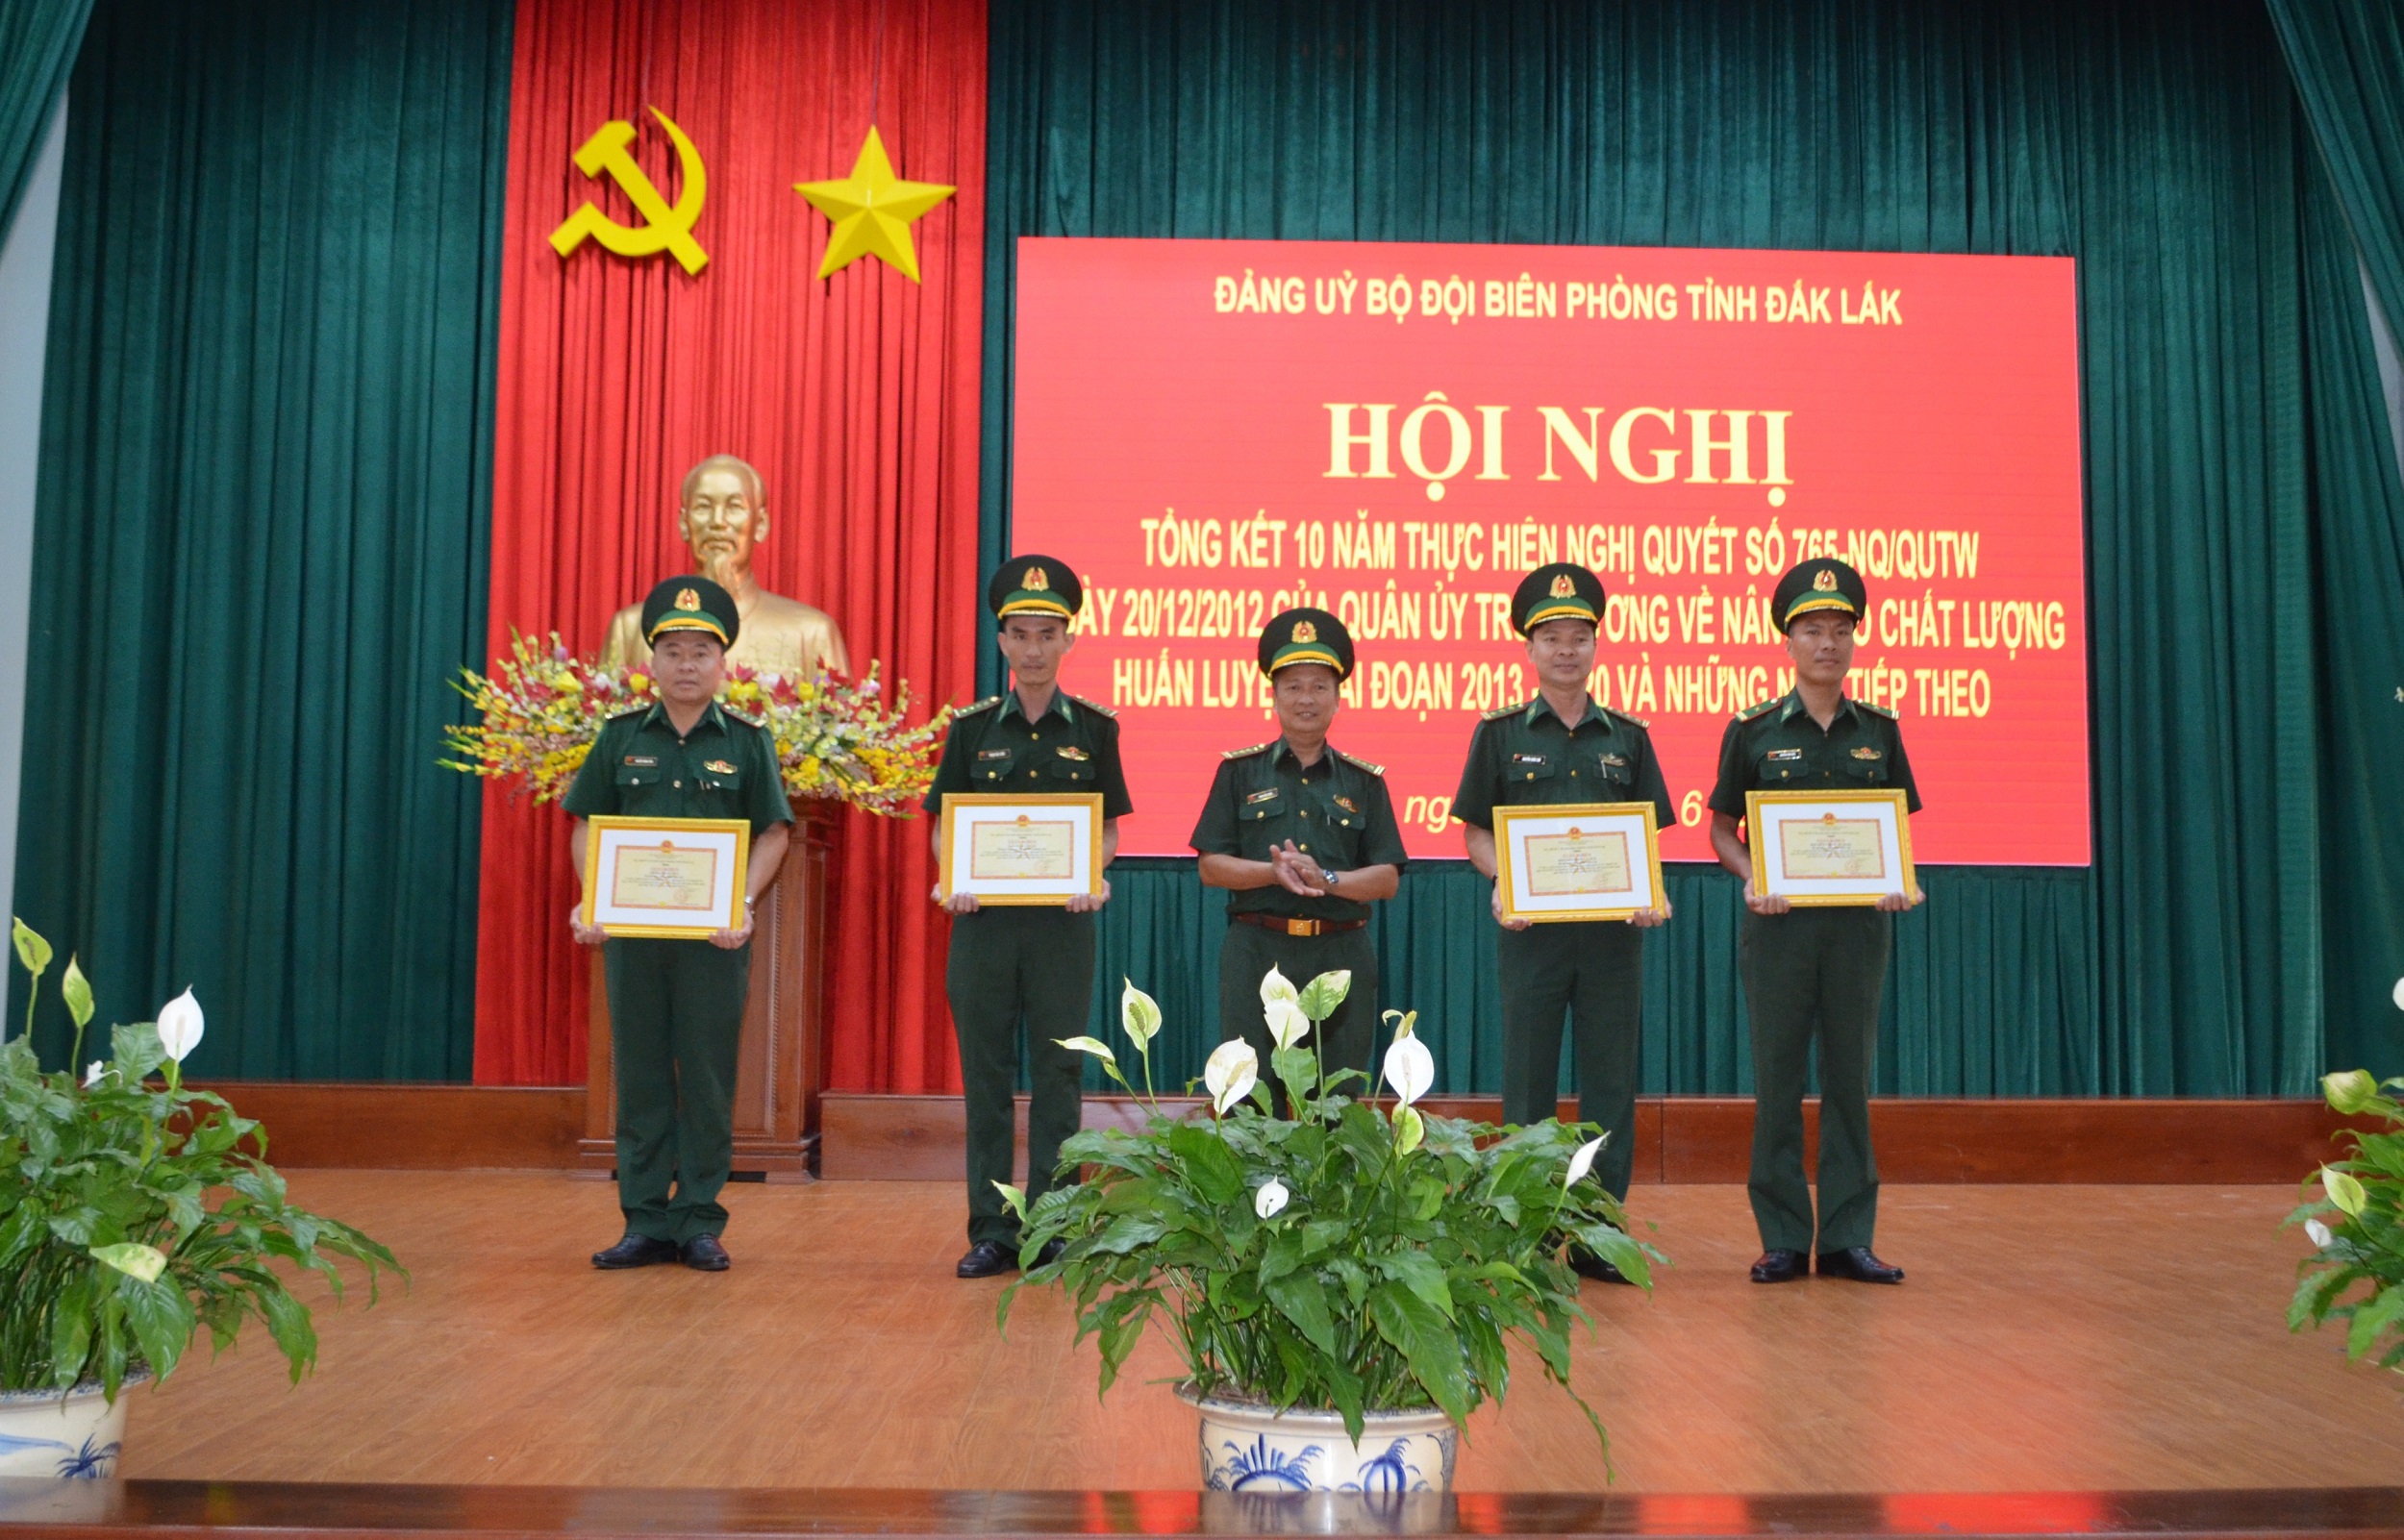 Bộ đội Biên phòng Đắk Lắk tổng kết 10 năm thực hiện Nghị quyết số 765 của Quân ủy Trung ương